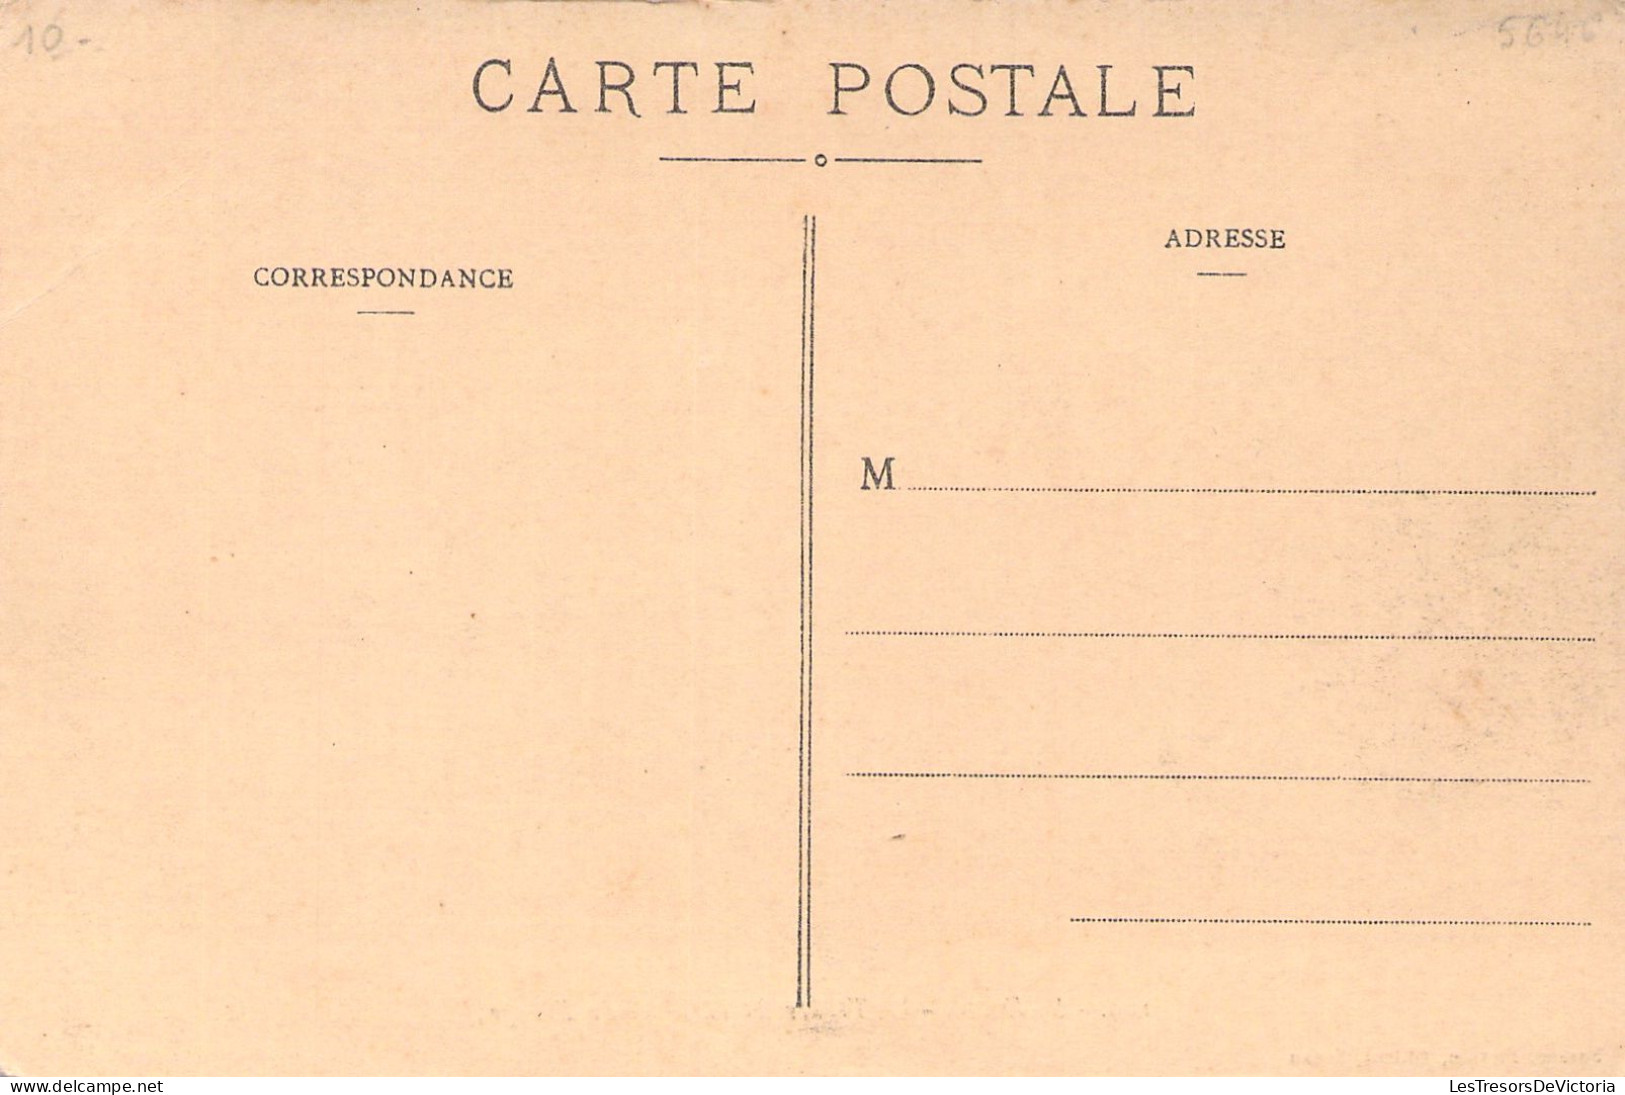 FRANCE - Sedan - Le Theatre Et La Place Du Rivage - Suzaine Pierson Edit - Carte Postale Ancienne - Sedan